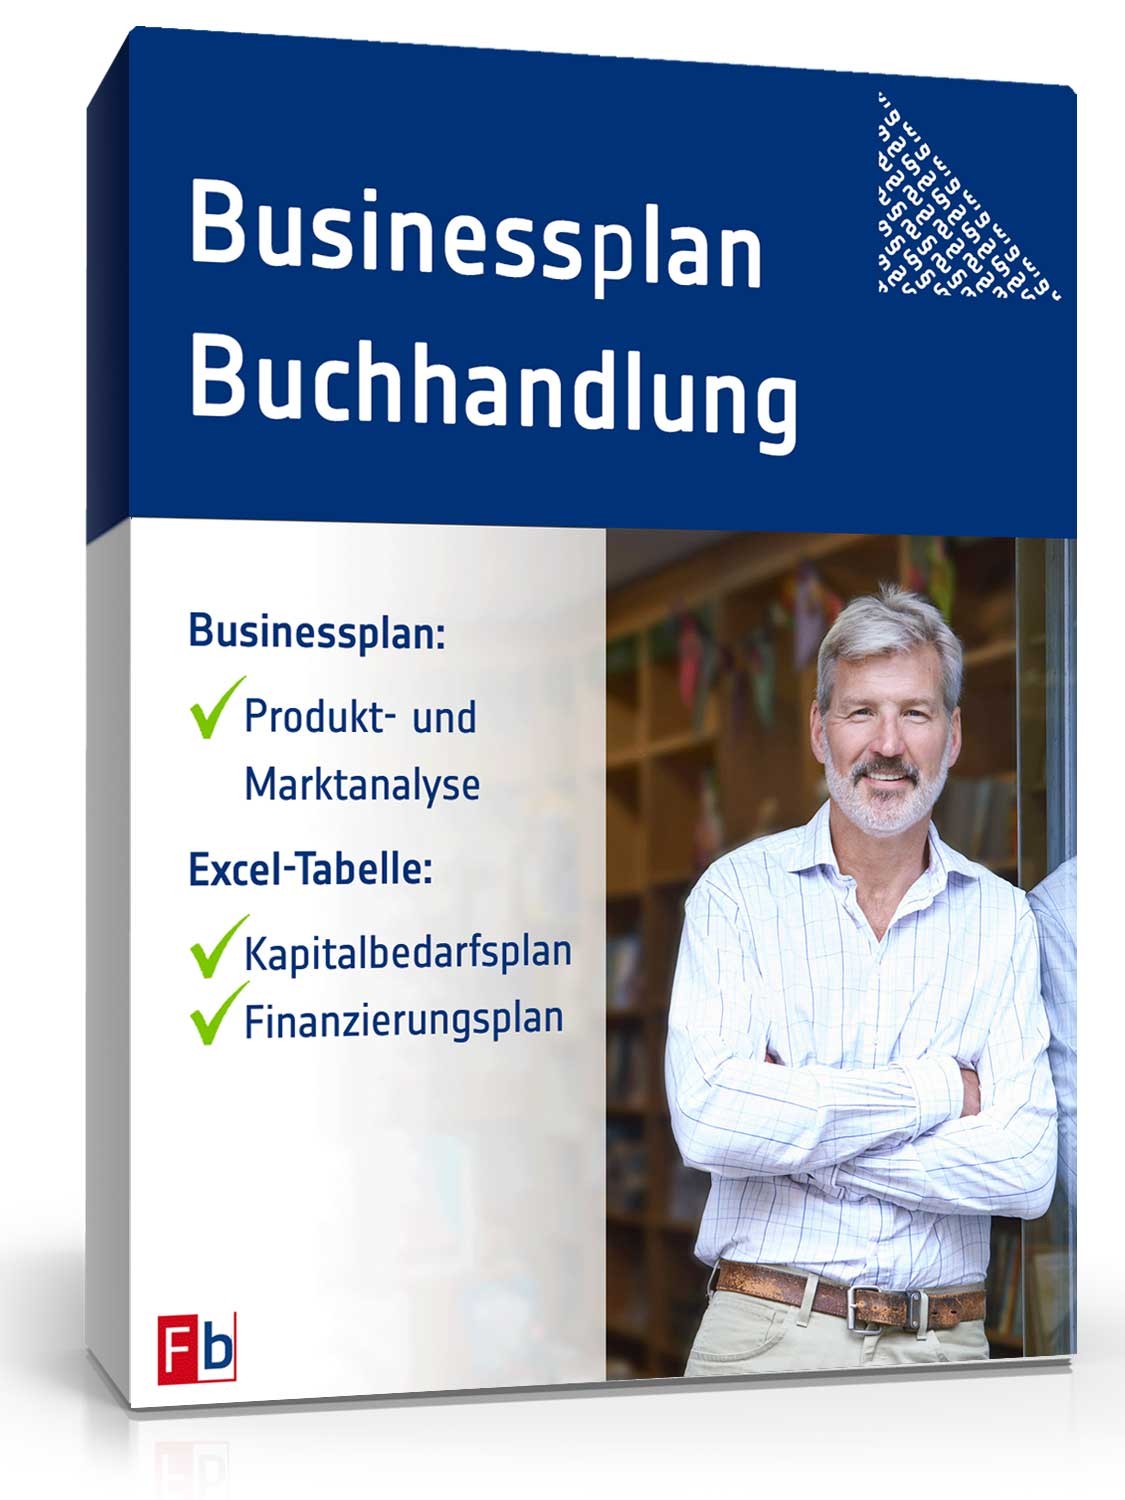 Hauptbild des Produkts: Businessplan Buchhandlung